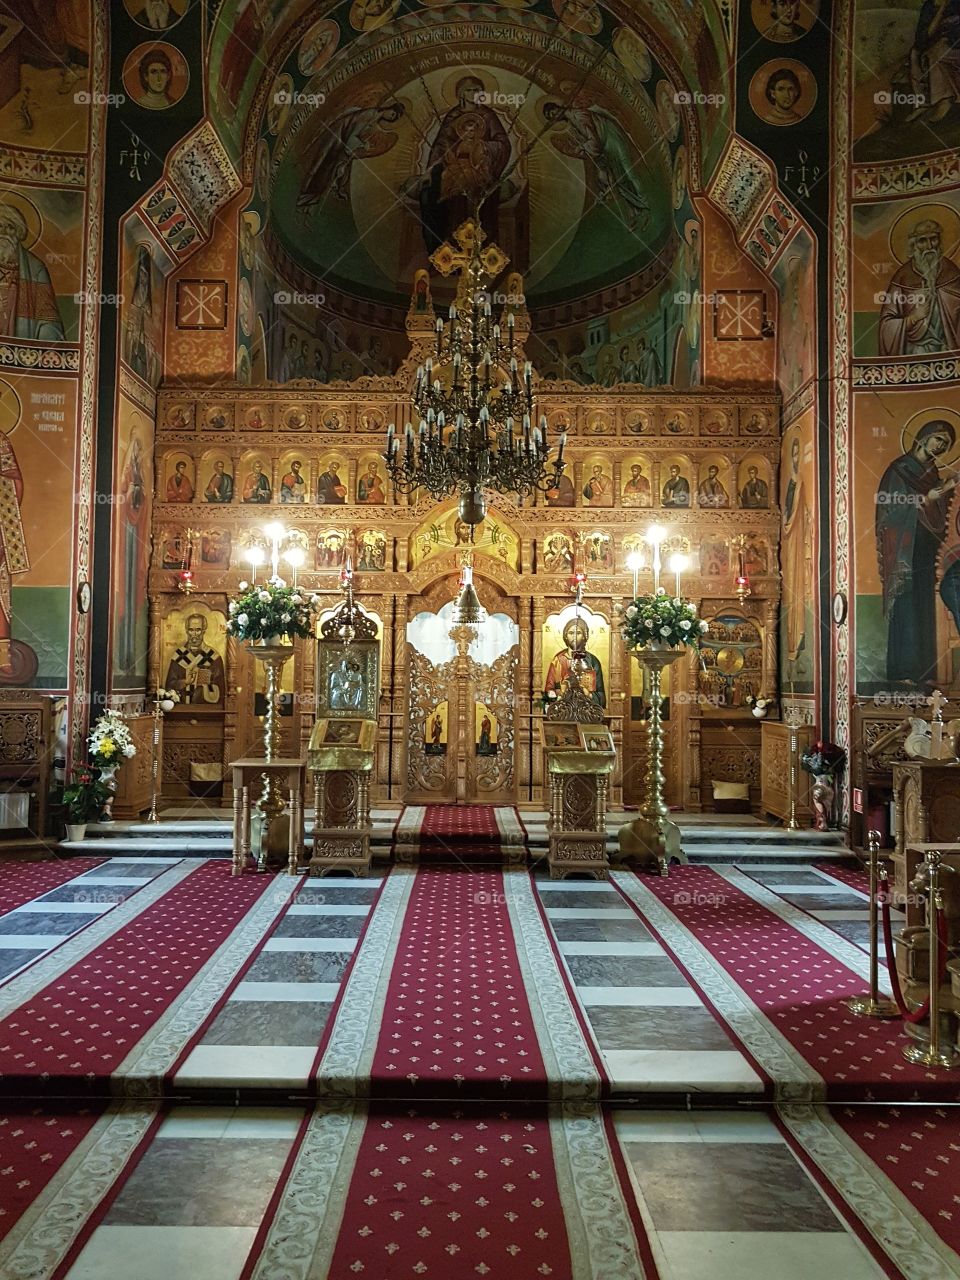 Monastery  "Dumineca Sfintilor Romani" in Bucharest